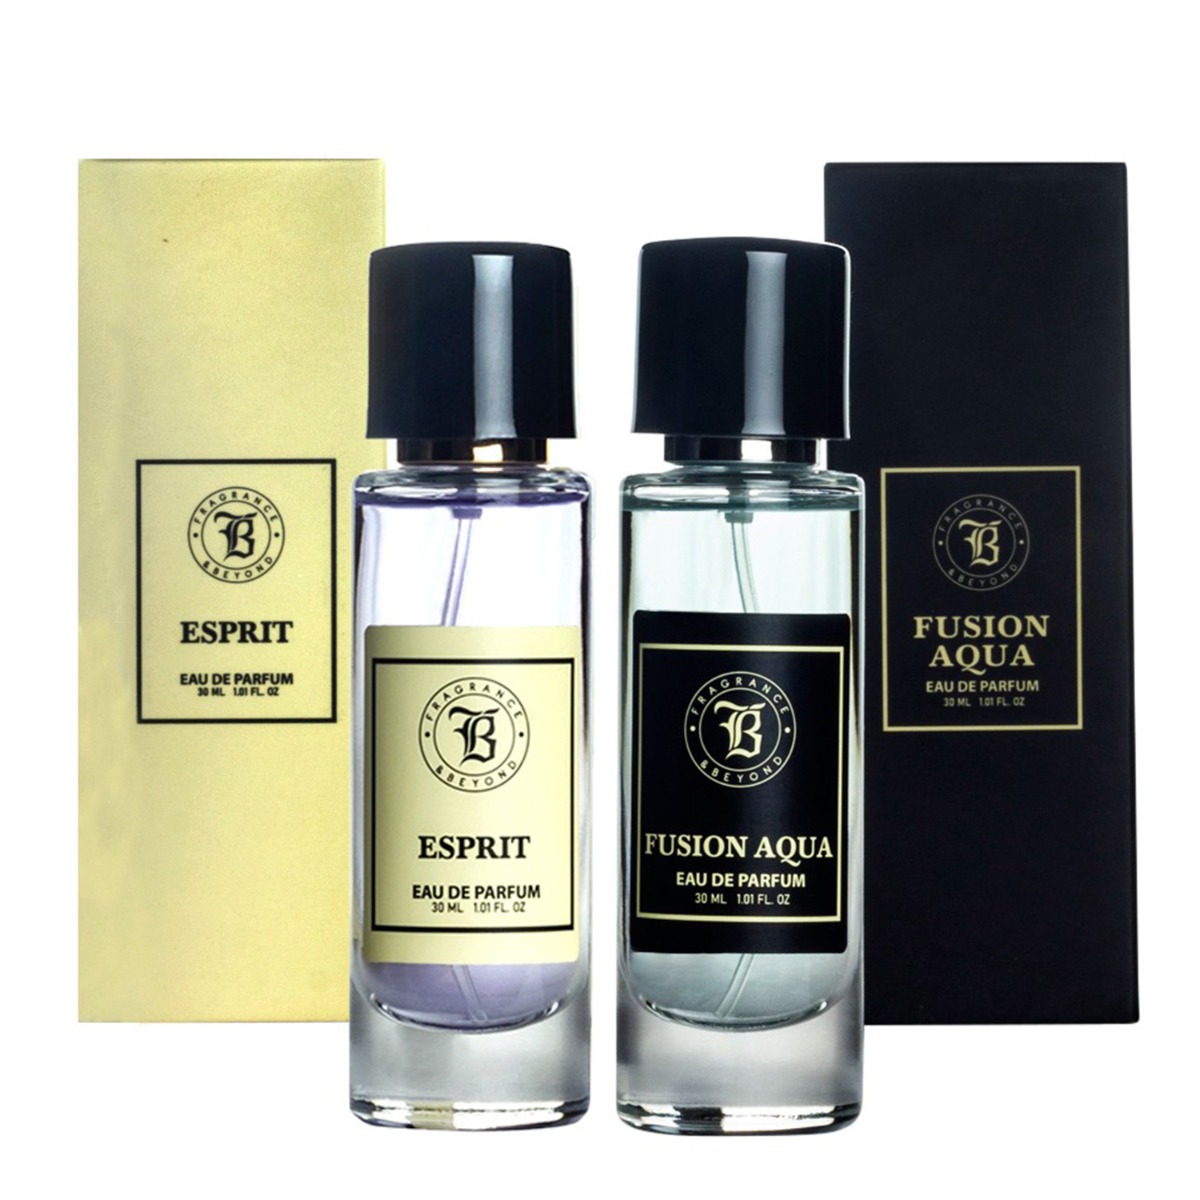 Fragrance & Beyond Fusion Aqua and Esprit Eau De Parfum (Perfume) Combo For Men and Women, 30ml Each